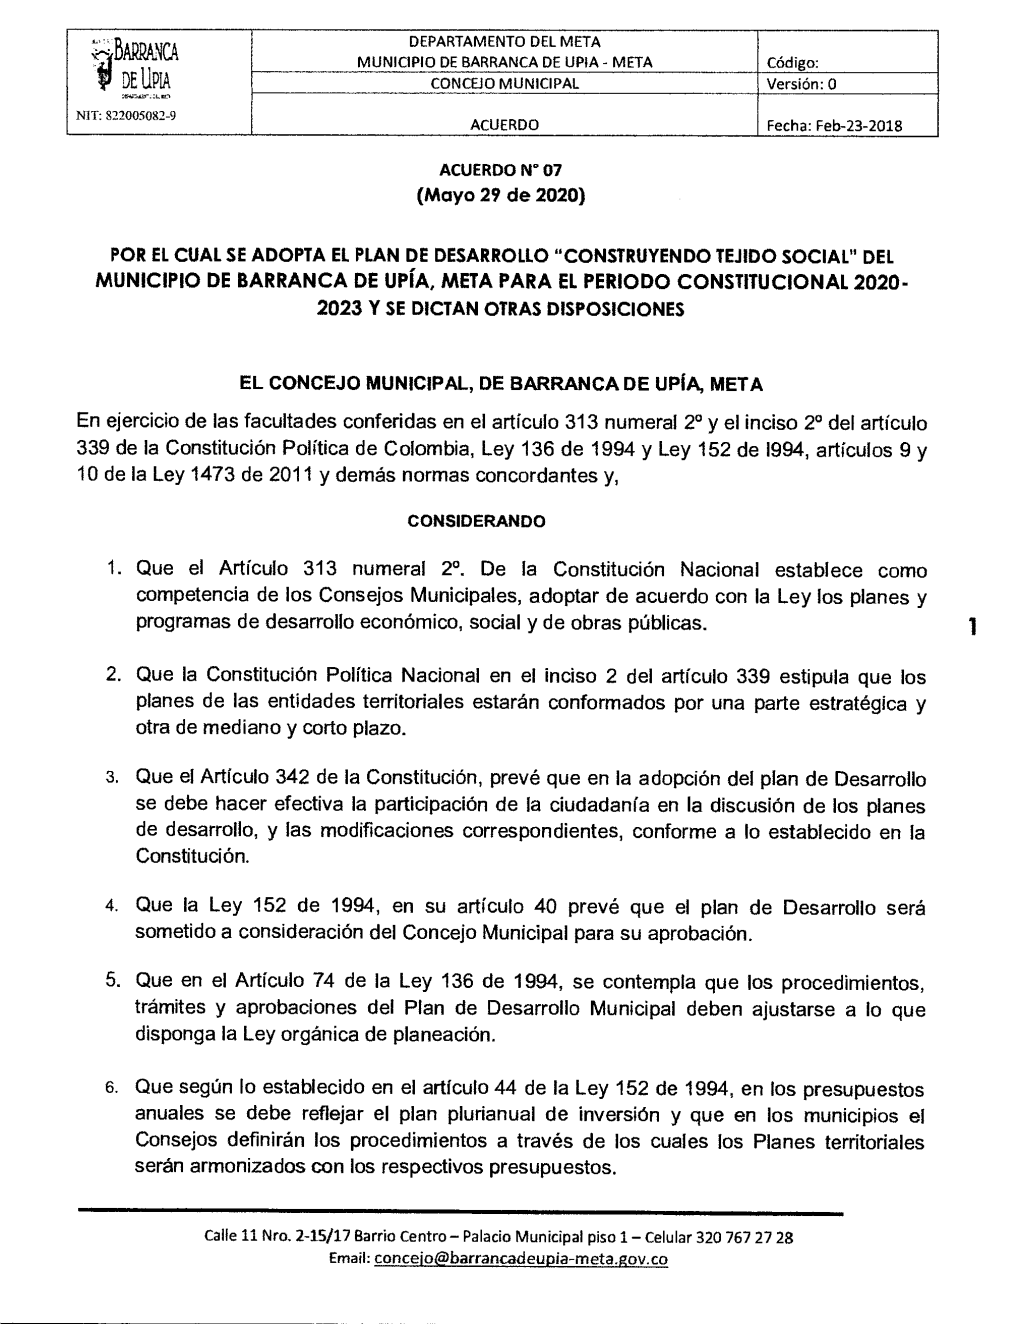 Del Municipio De Barranca De Upía, Meta Para El Periodo Constitucional 2020- 2023 Y Se Dictan Otras Disposiciones